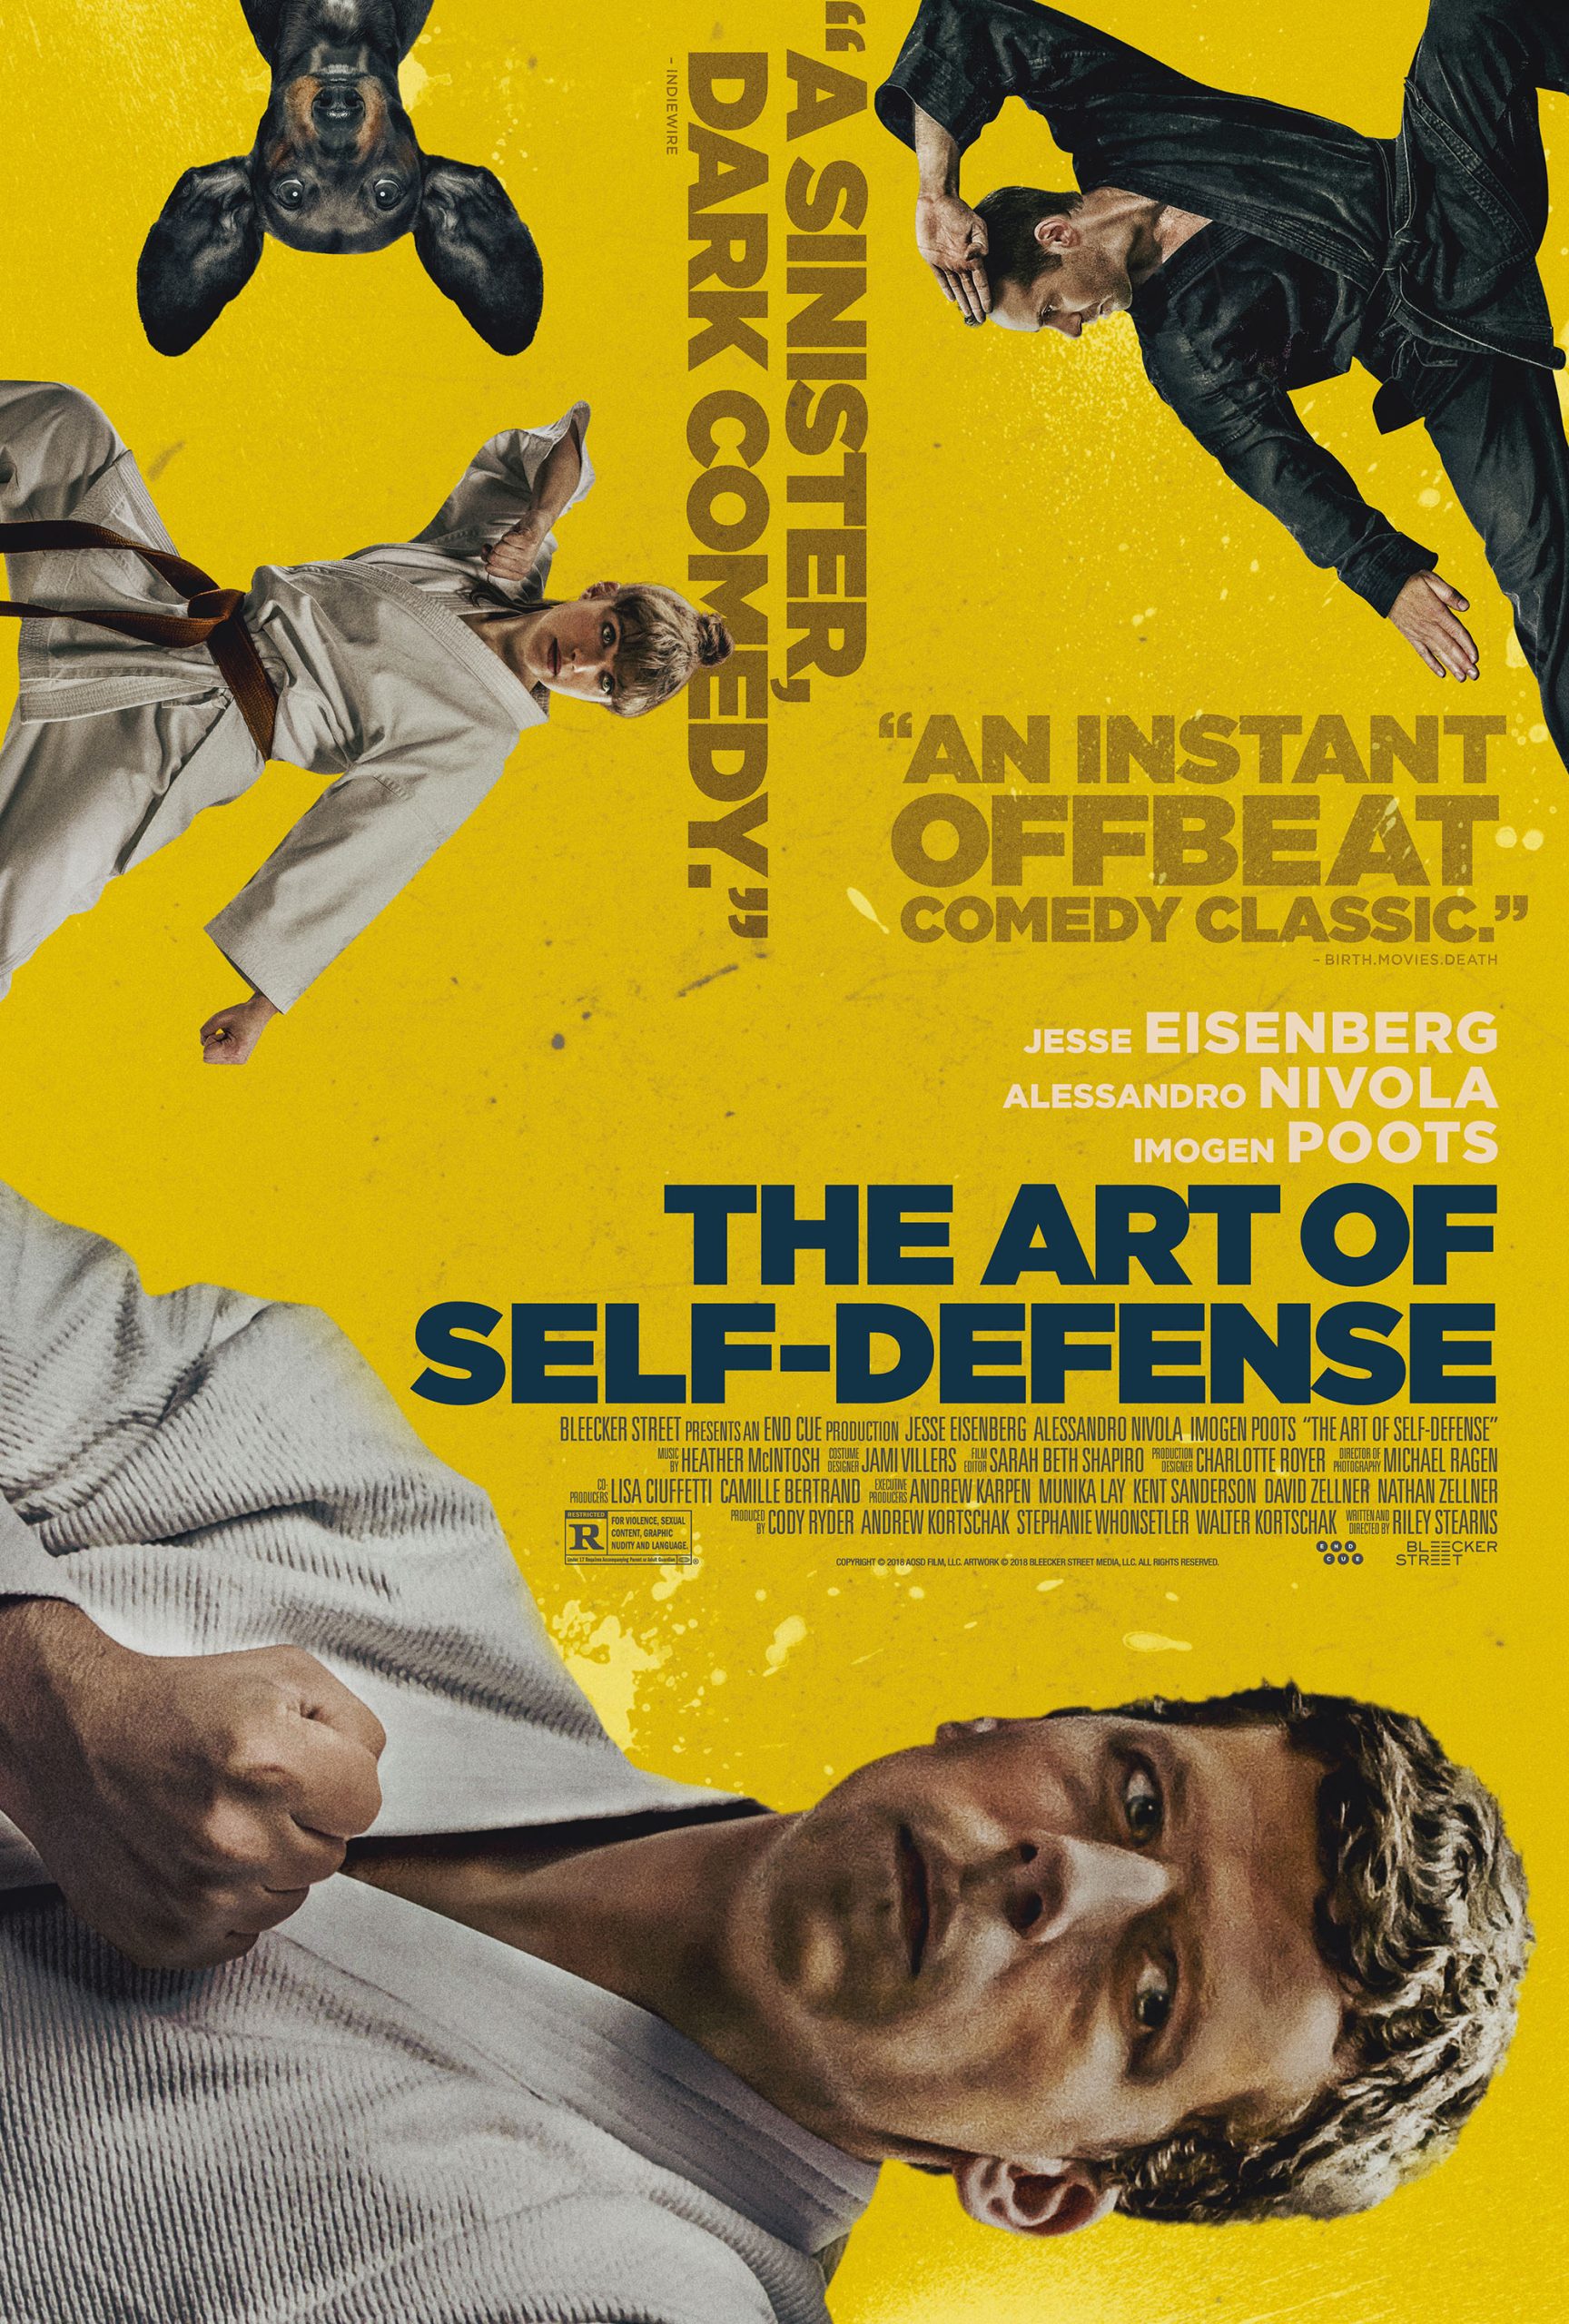 The Art of Self-Defense (2019) ยอดวิชาคาราเต้สุดป่วง Jesse Eisenberg